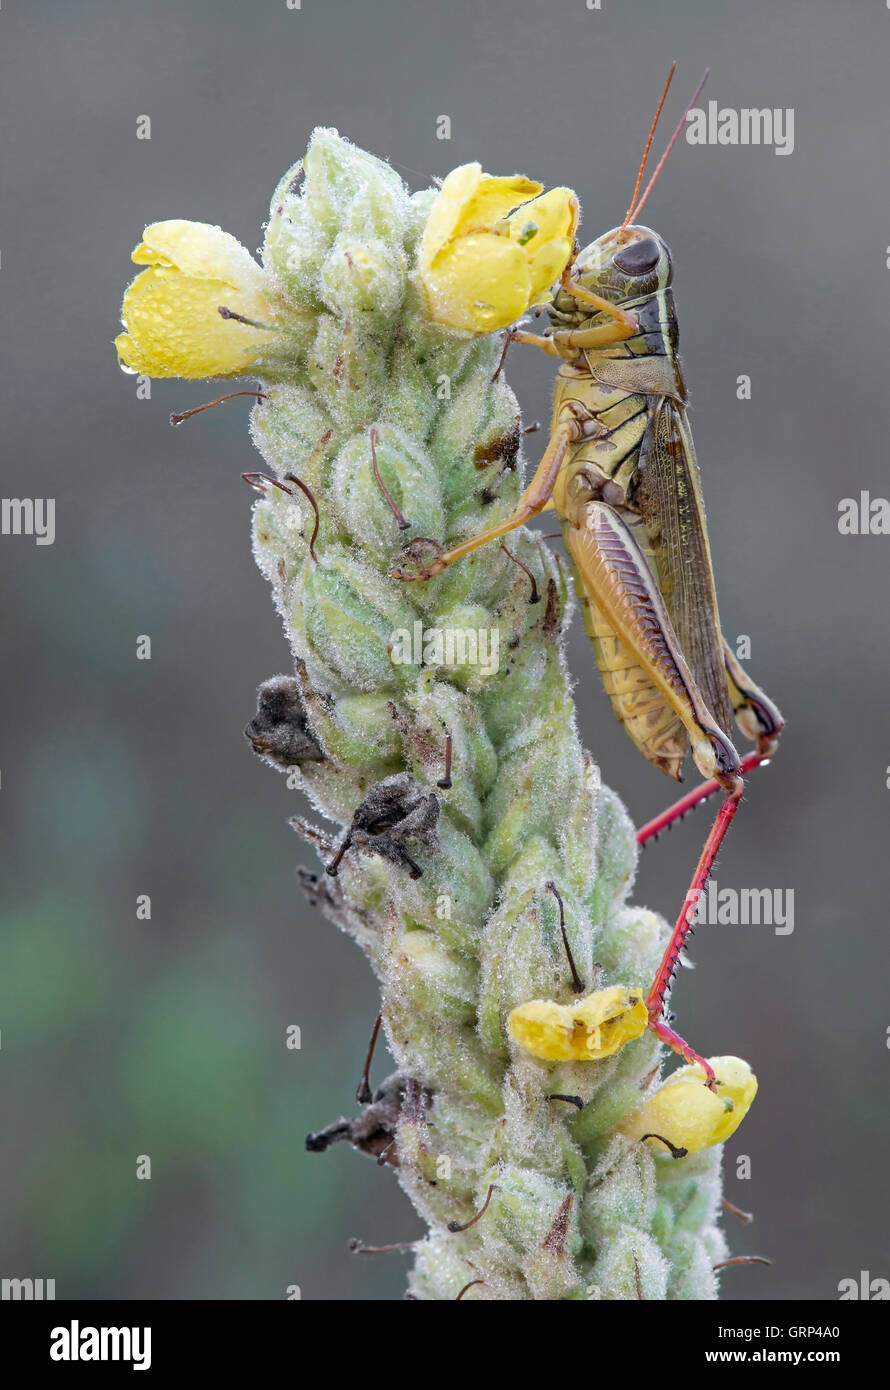 Zweistreifiger Grasshopper (Melanoplus bivittatus) auf der Gemeinen Mullein-Pflanze (Verbascum thapsus), E USA, von Skip Moody/Dembinsky Photo Assoc Stockfoto